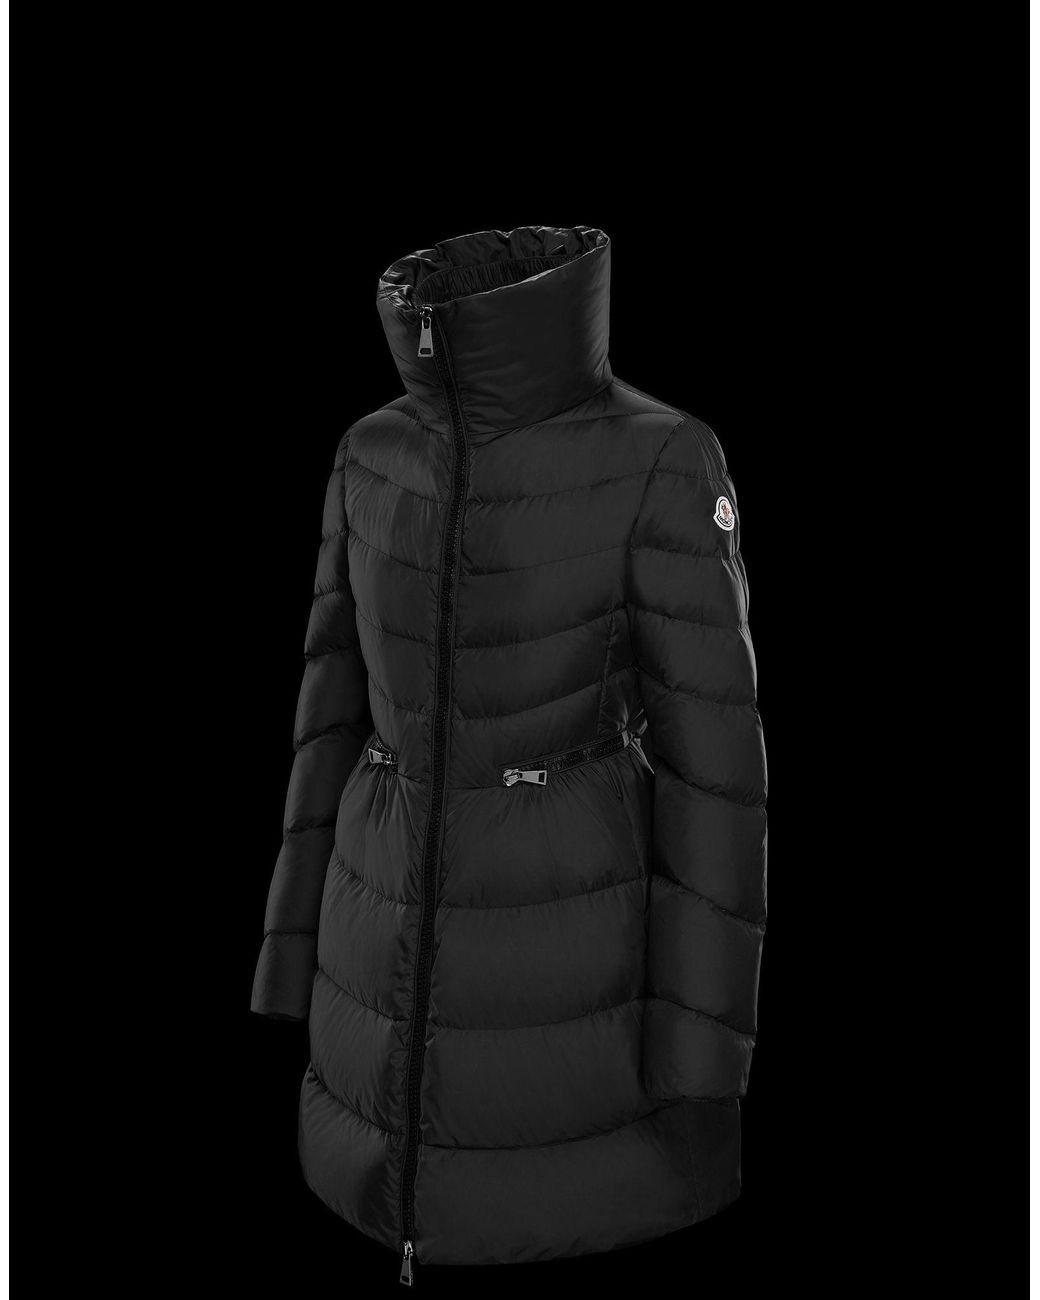 Moncler Nevalon Coat in Black | Lyst